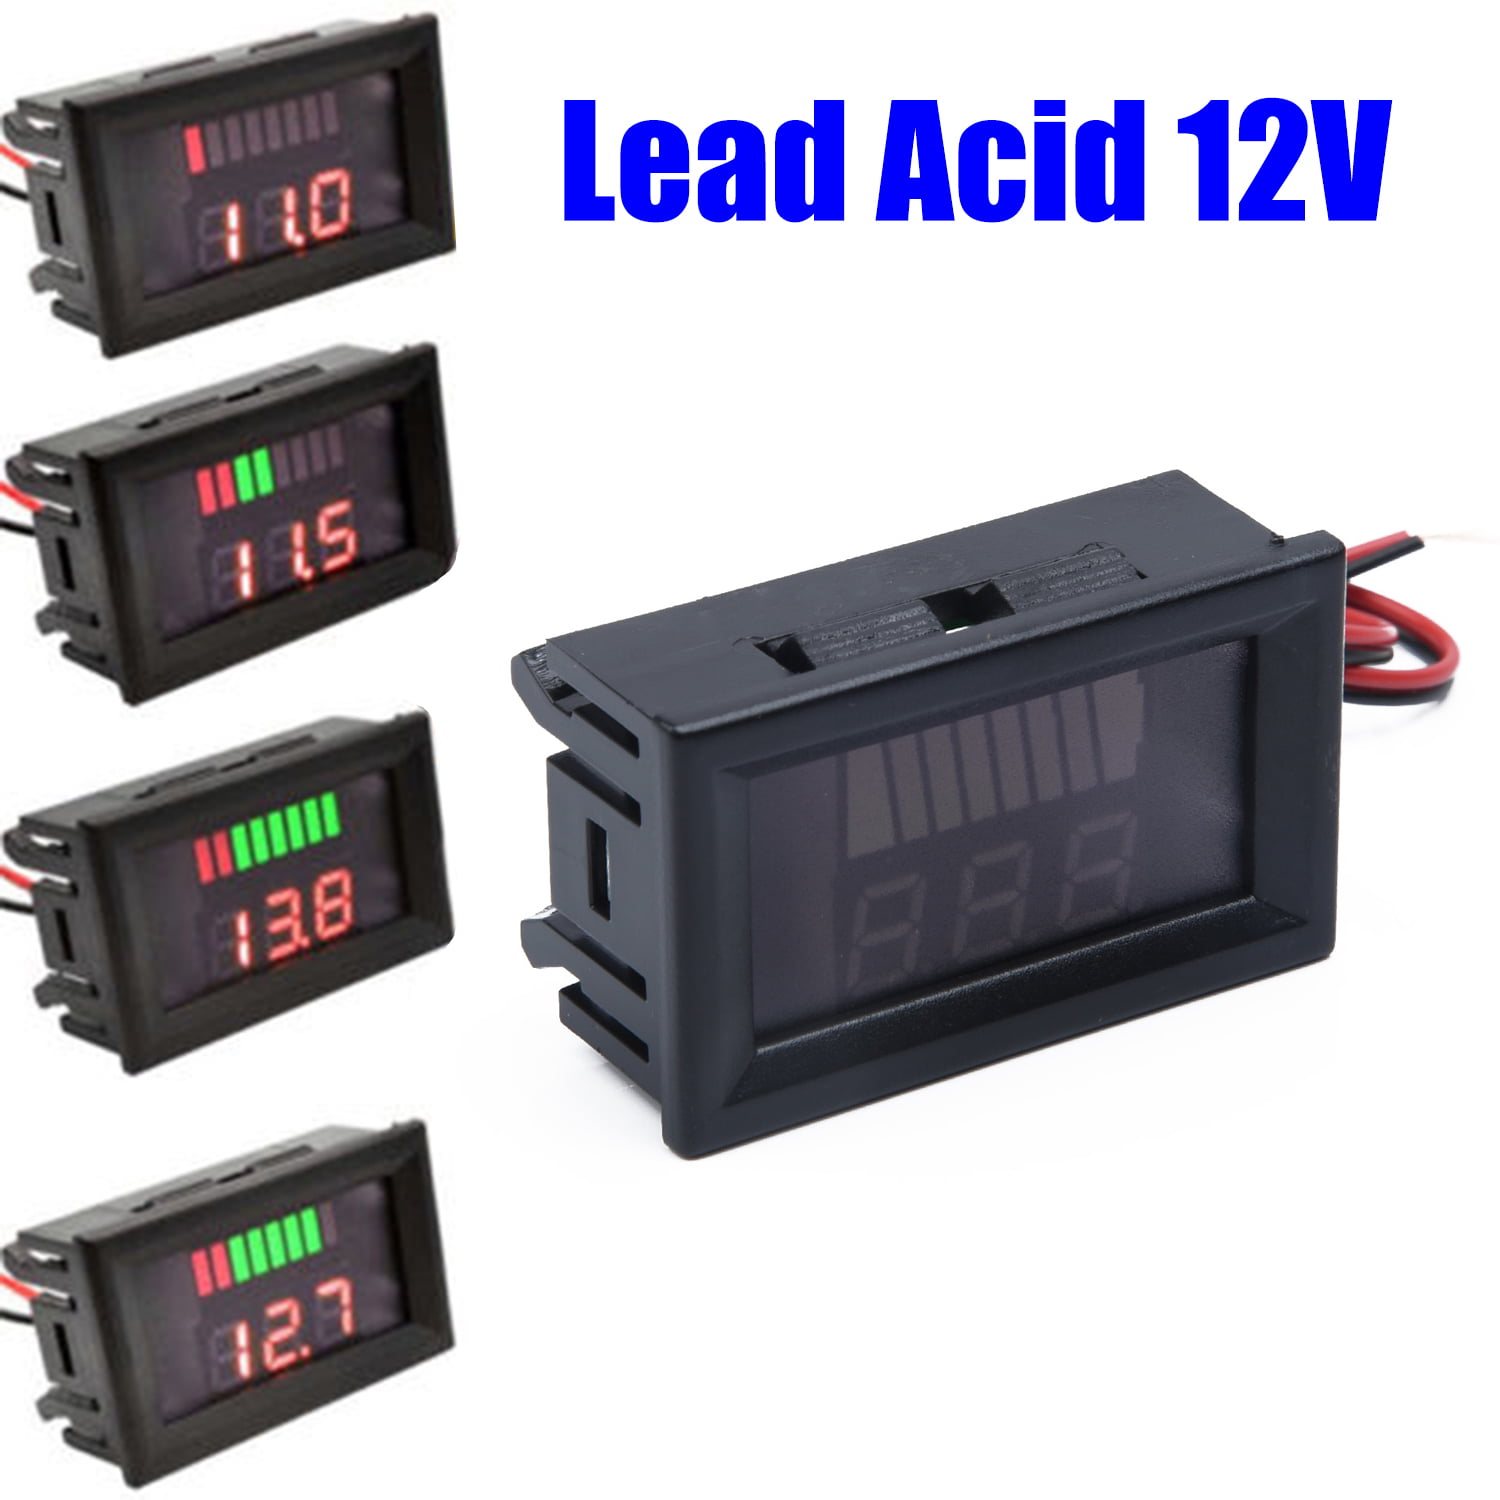 Acid Electromobile Volt-Gauge 12V Digital LED-Display Motorcycle Voltage Meter 